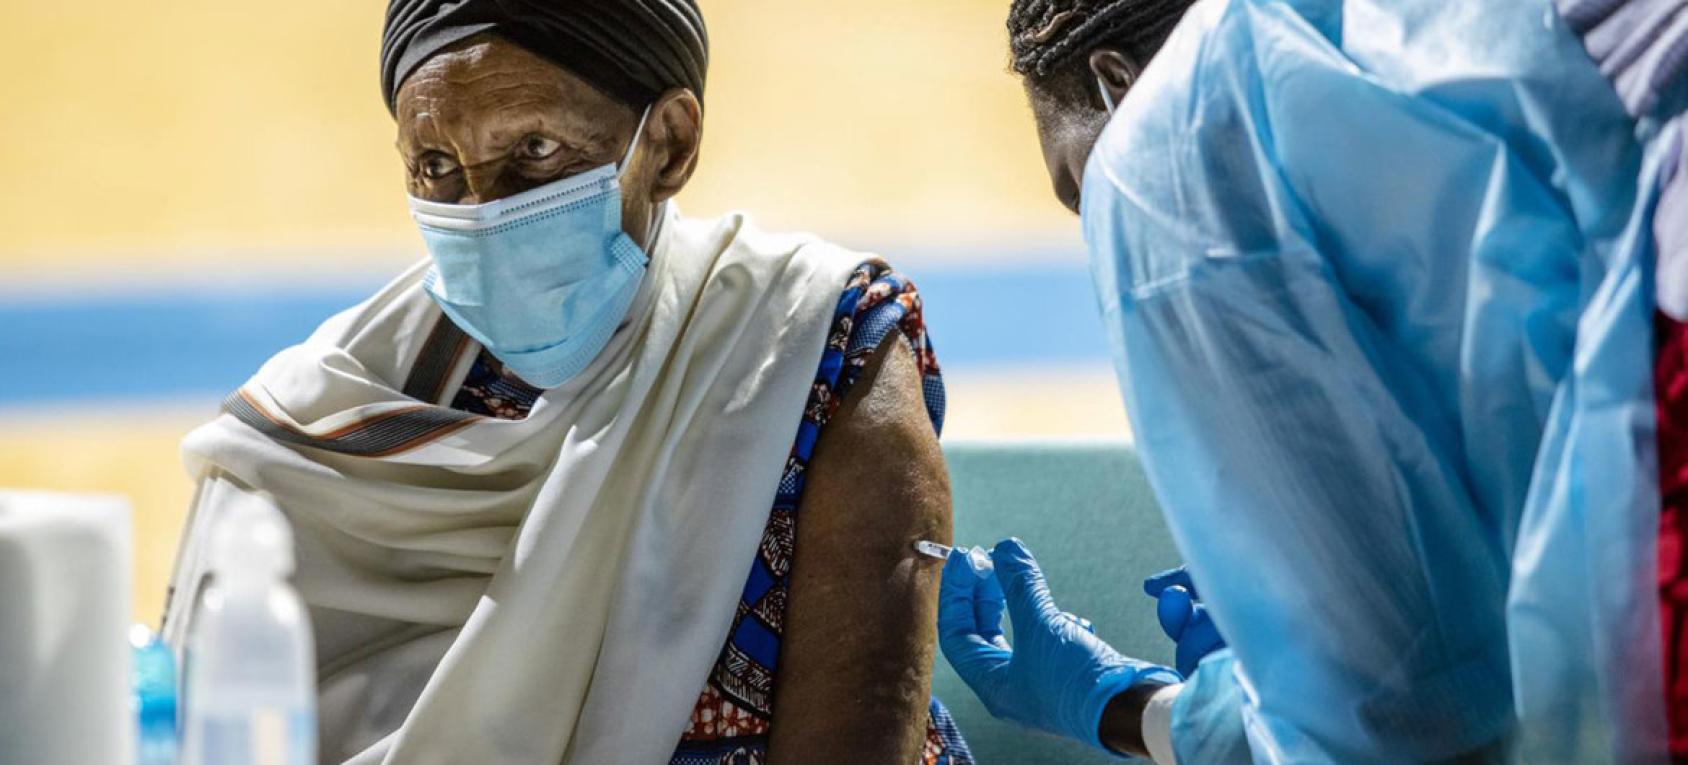 Un homme portant un masque chirurgical se fait vacciner contre la COVID-19 par un membre du personnel de santé.